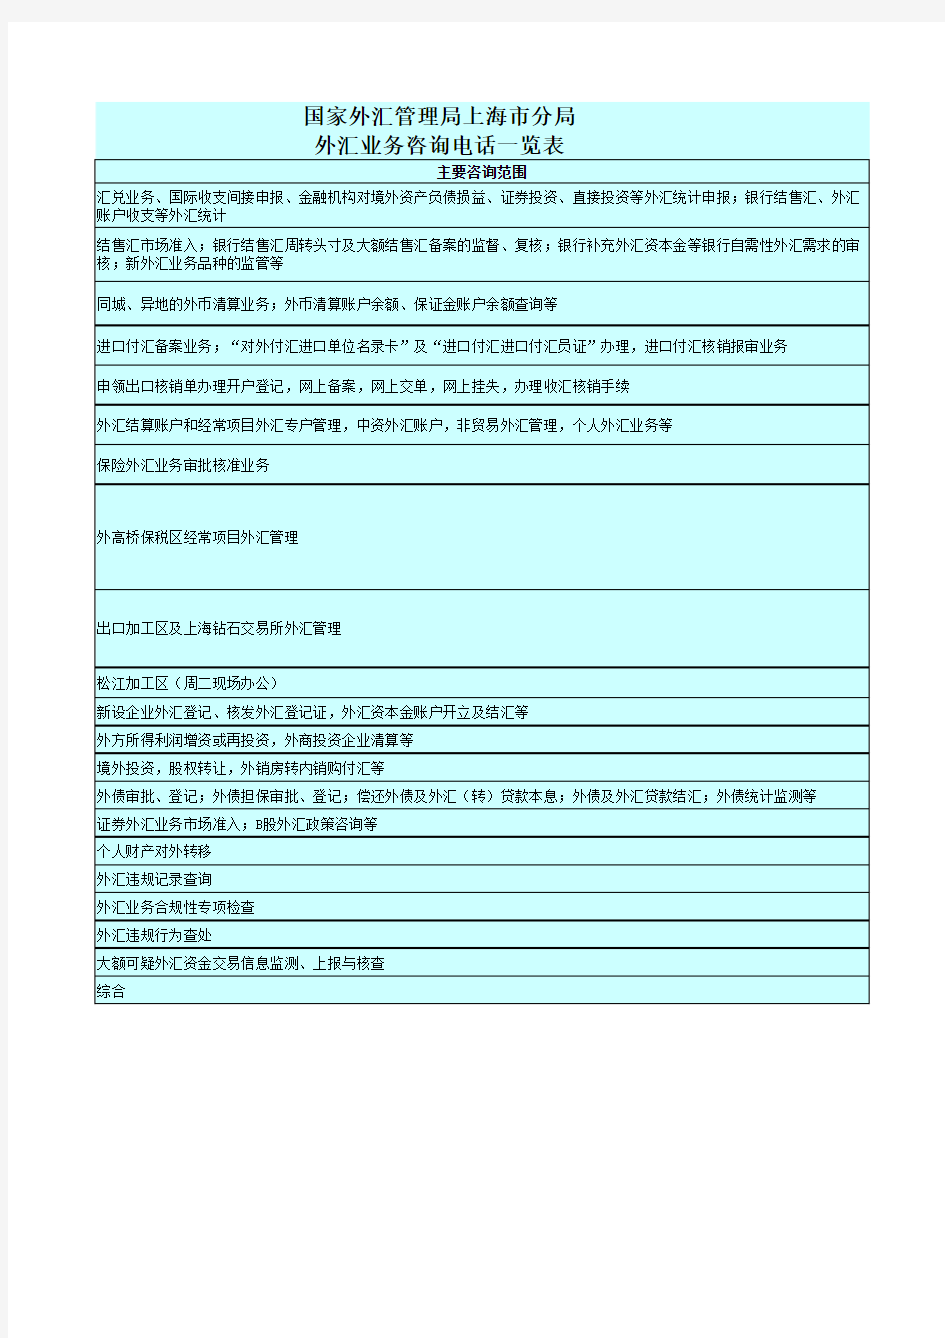 上海外管局进出口核销培训总结-进口核销-Appendix-5_国家外汇管理局上海市分局外汇业务咨询电话一览表